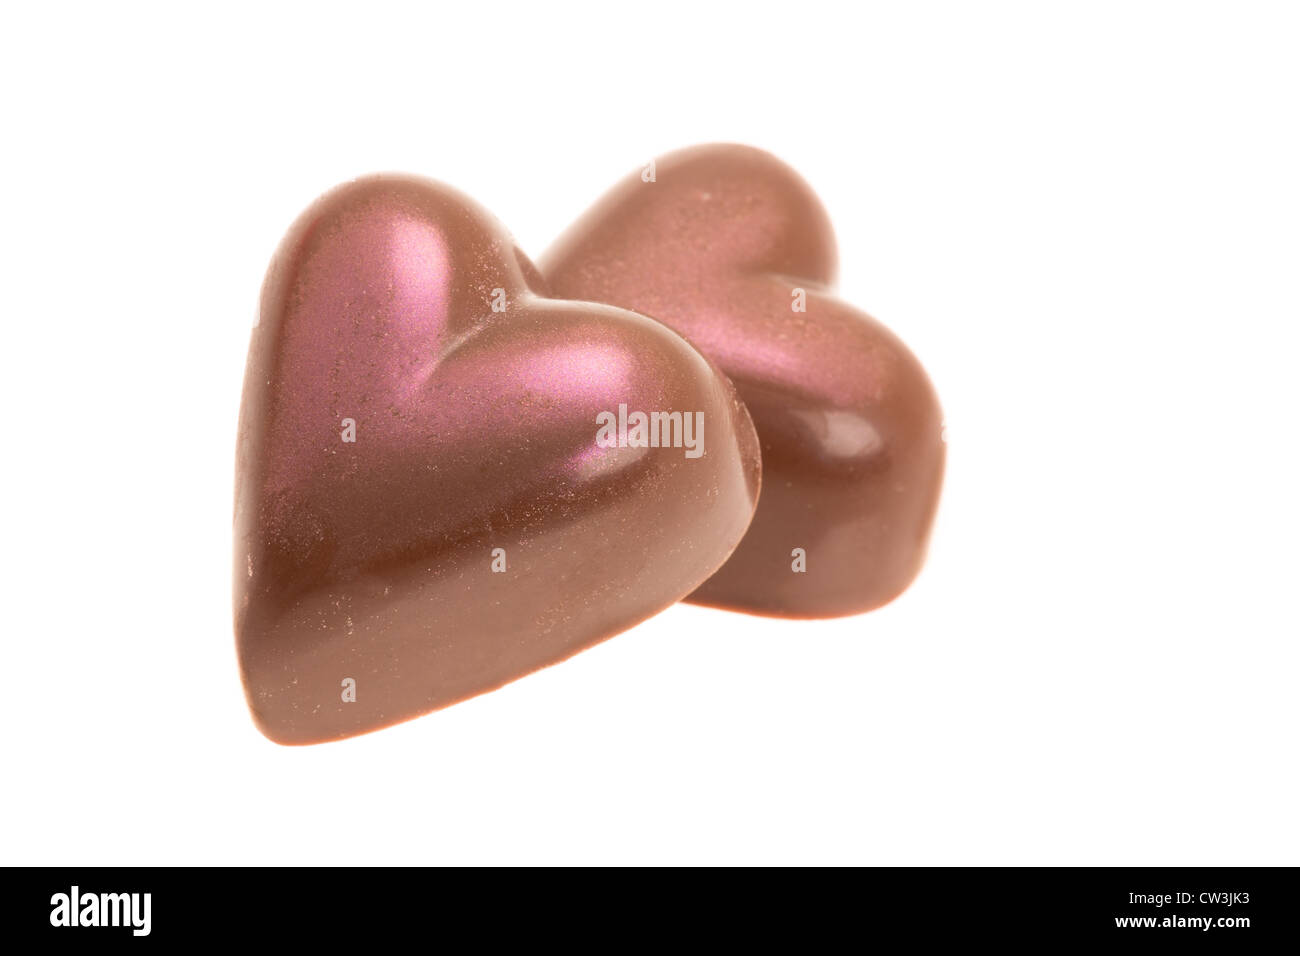 Zwei belgische Milchschokolade-Herzen, die eine weiche rosa Glasur - Studio gedreht mit einem weißen Hintergrund gegeben haben Stockfoto